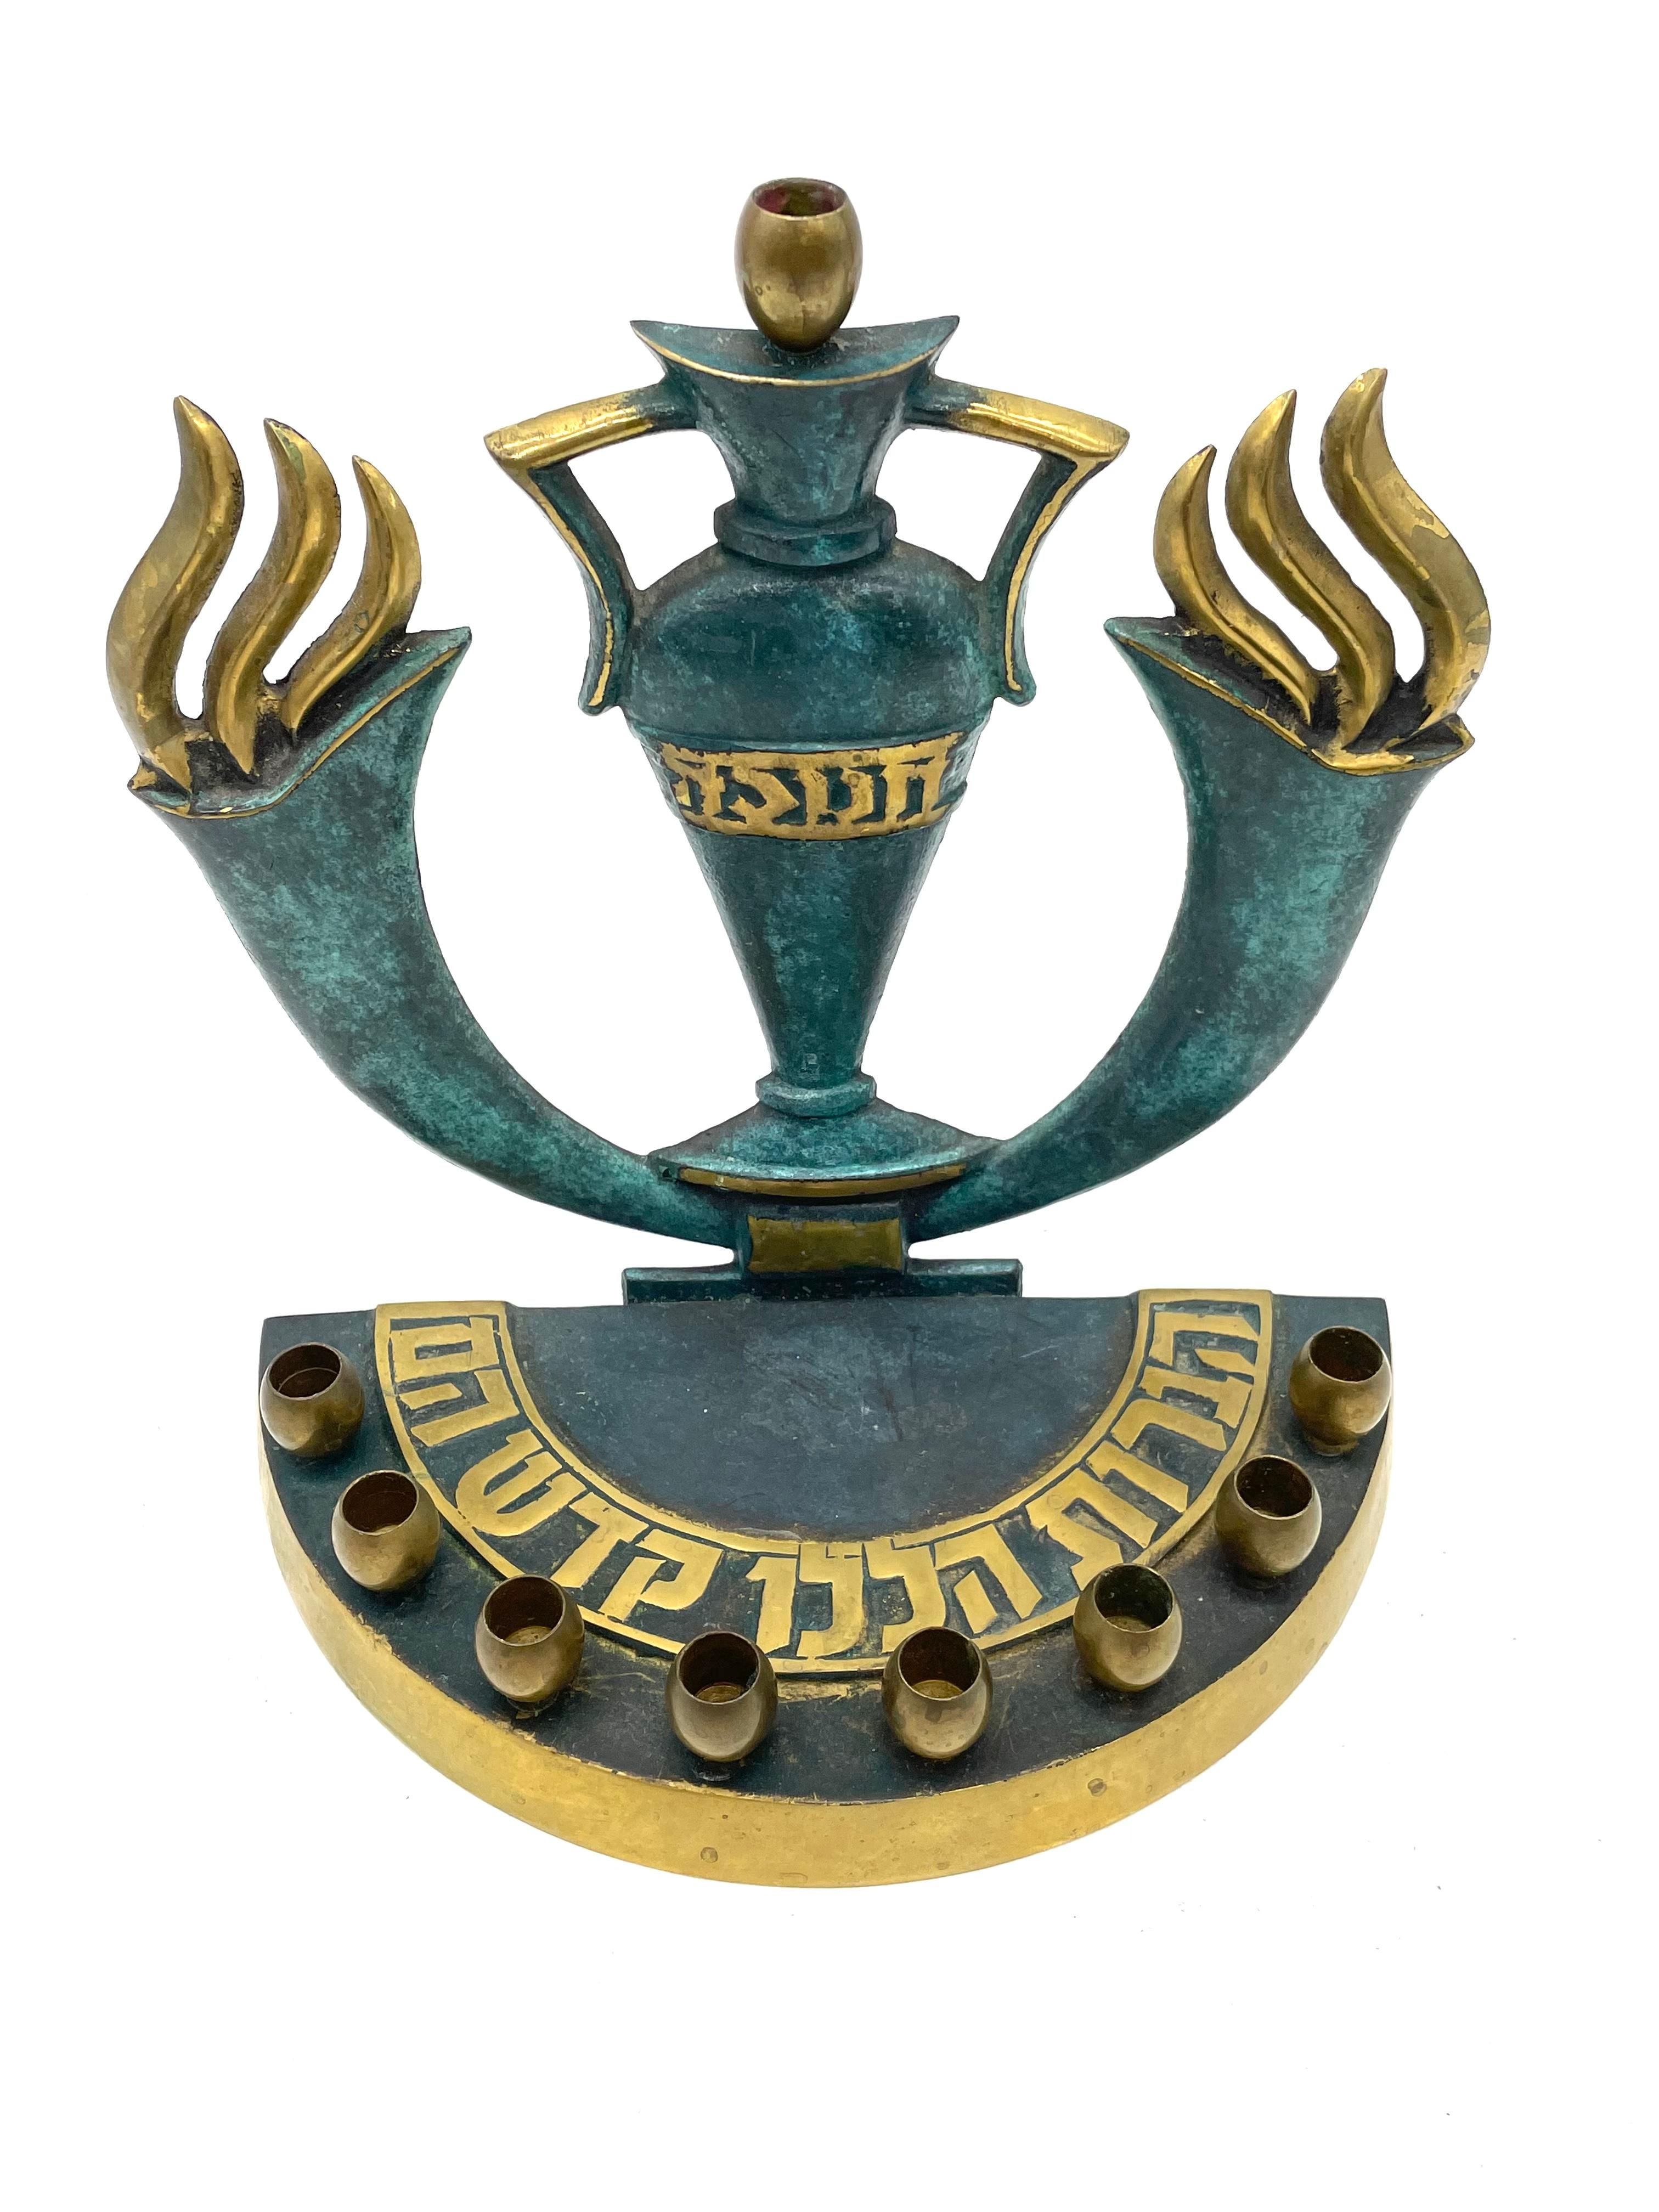 Laiton moulé fabriqué en Israël, vers 1950. Le mot hébreu 